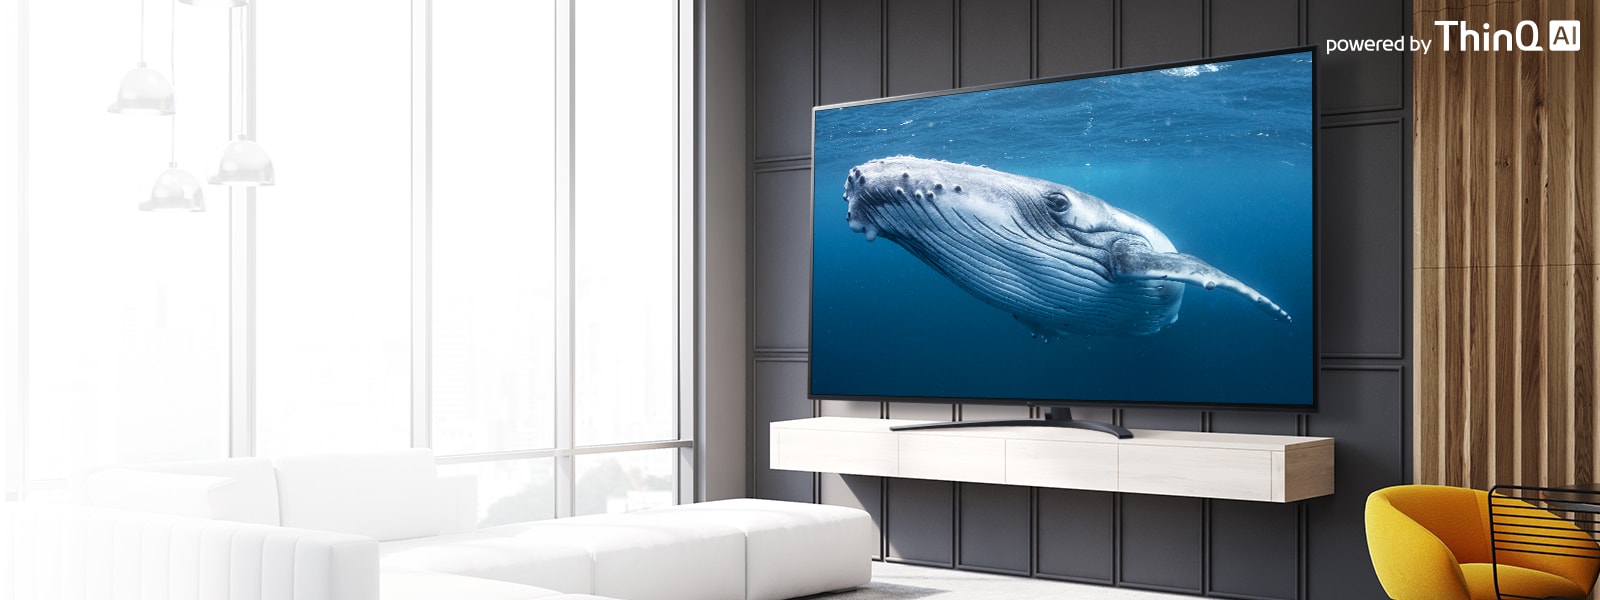 صورة توضح غرفة معيشة بها تلفزيون بشاشة كبيرة يظهر عليها أحد الحيتان الكبير في البحر. يظهر بالصورة الجزء الأمامي من شاشة التلفزيون الكبيرة في منتصف الجزء الأيسر وشعار ThinQ AI في الجزء الأيمن العلوي.